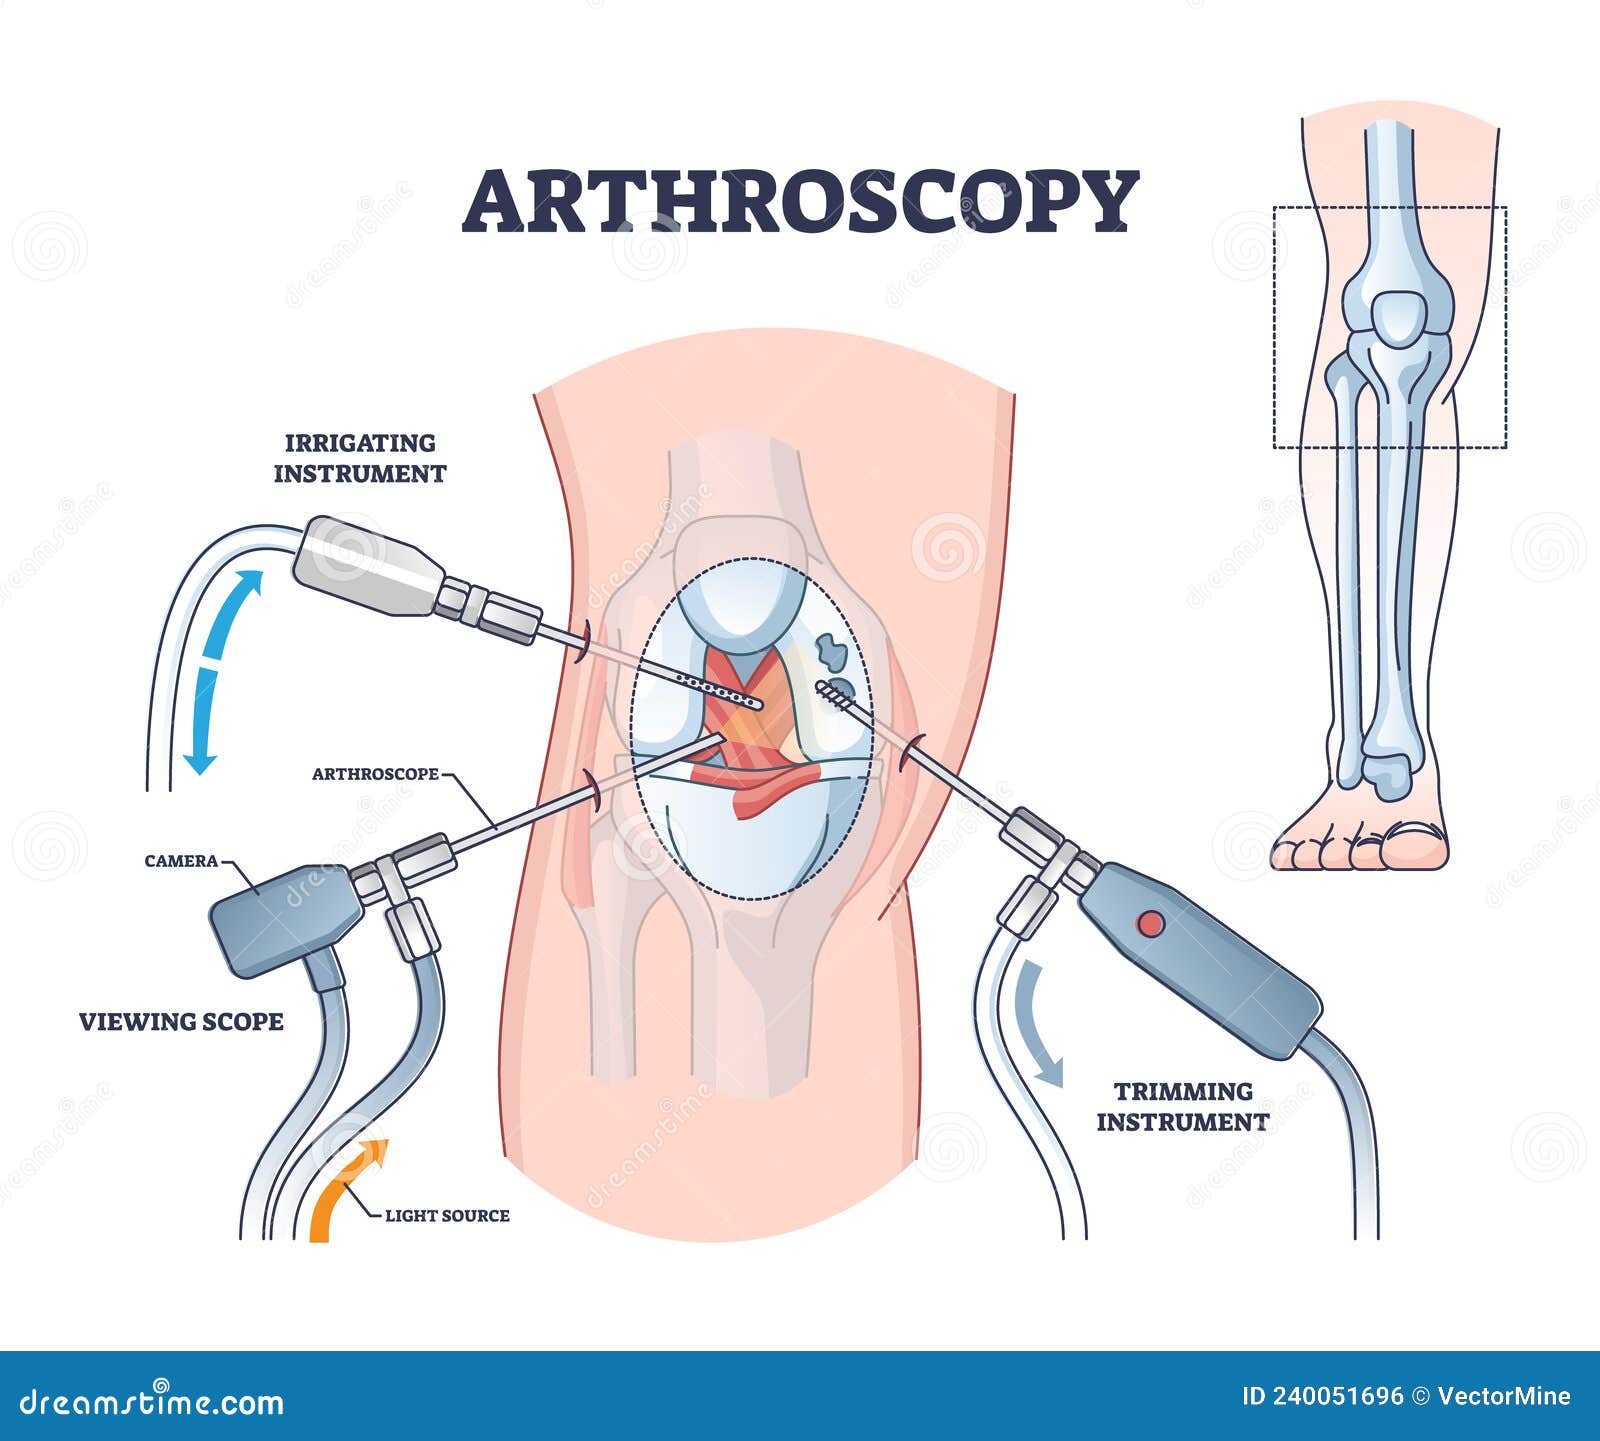 arthroscopy procedure as knee diagnostics process explanation outline diagram